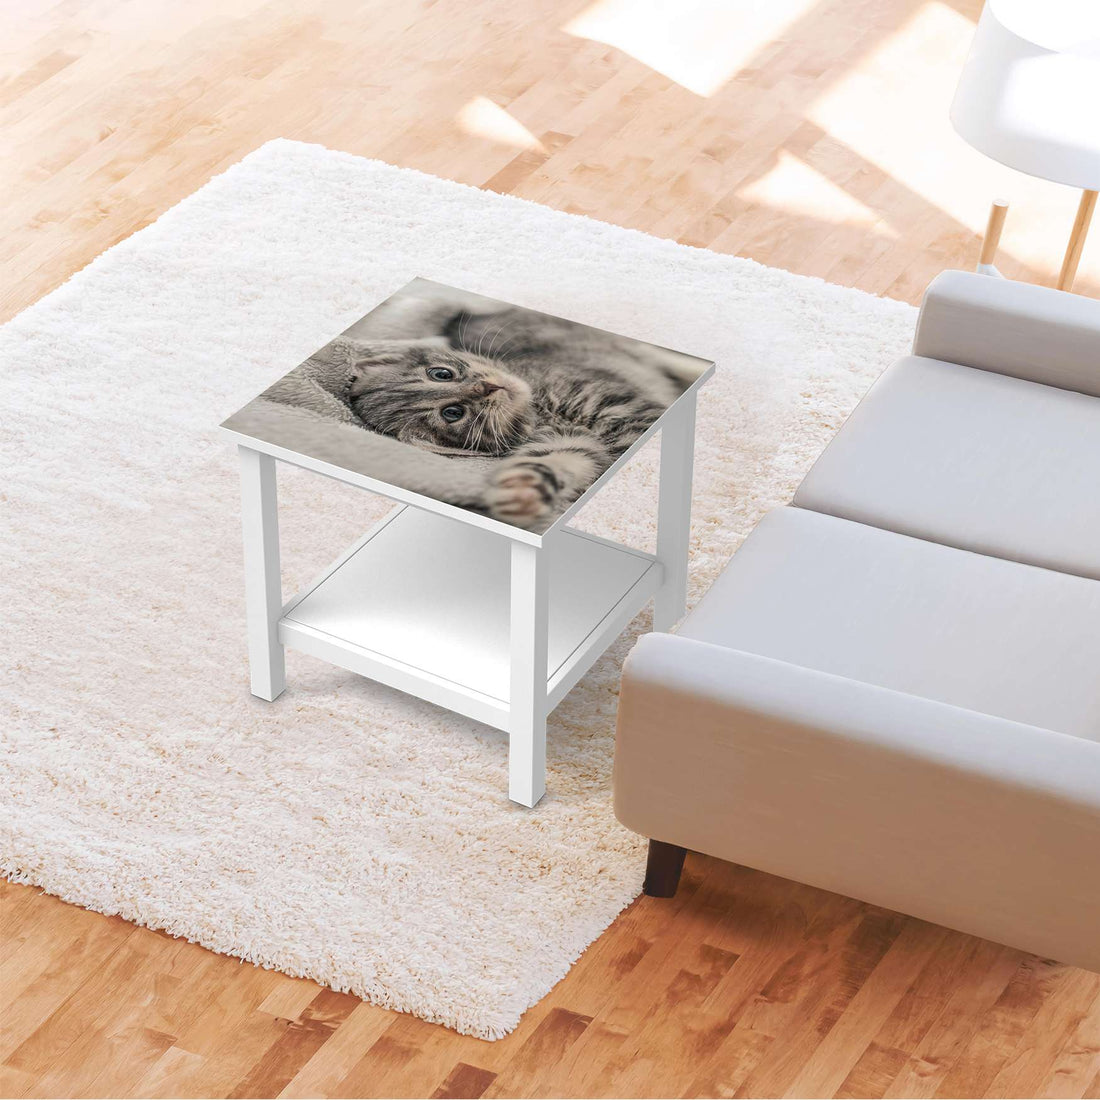 Möbel Klebefolie Kitty the Cat - IKEA Hemnes Beistelltisch 55x55 cm - Wohnzimmer